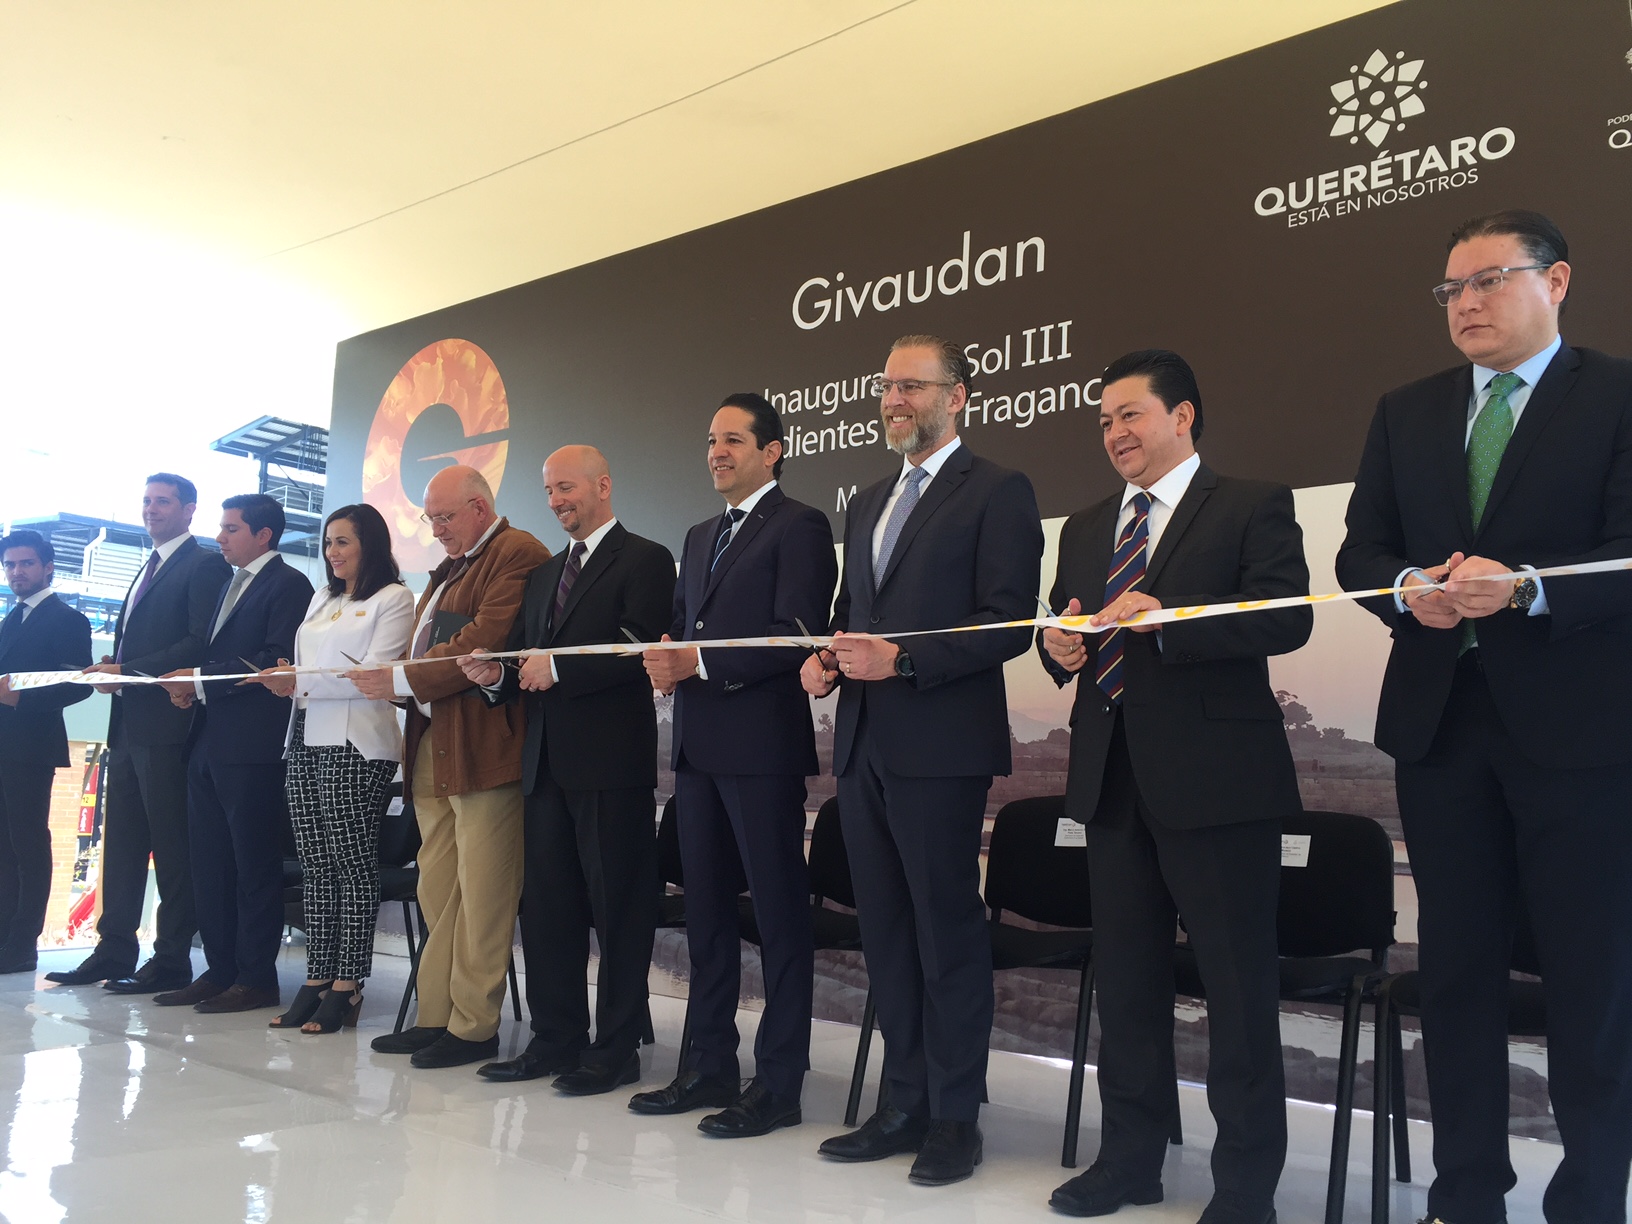  Empresa sueca de perfumería inaugura planta en Querétaro